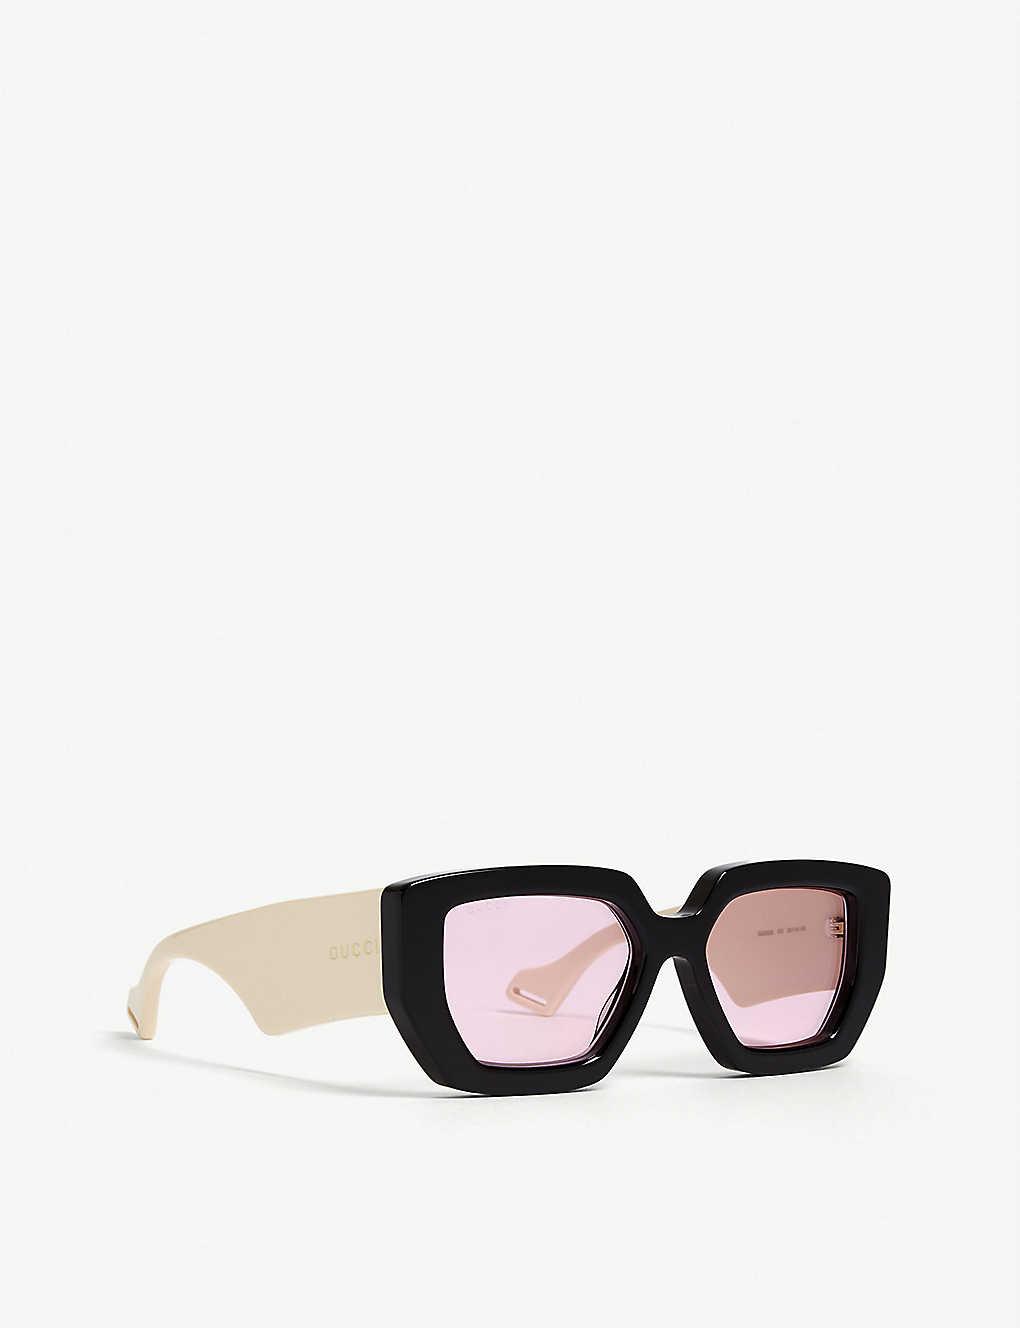 Gucci GG0630S Sunglasses in Black - Lyst